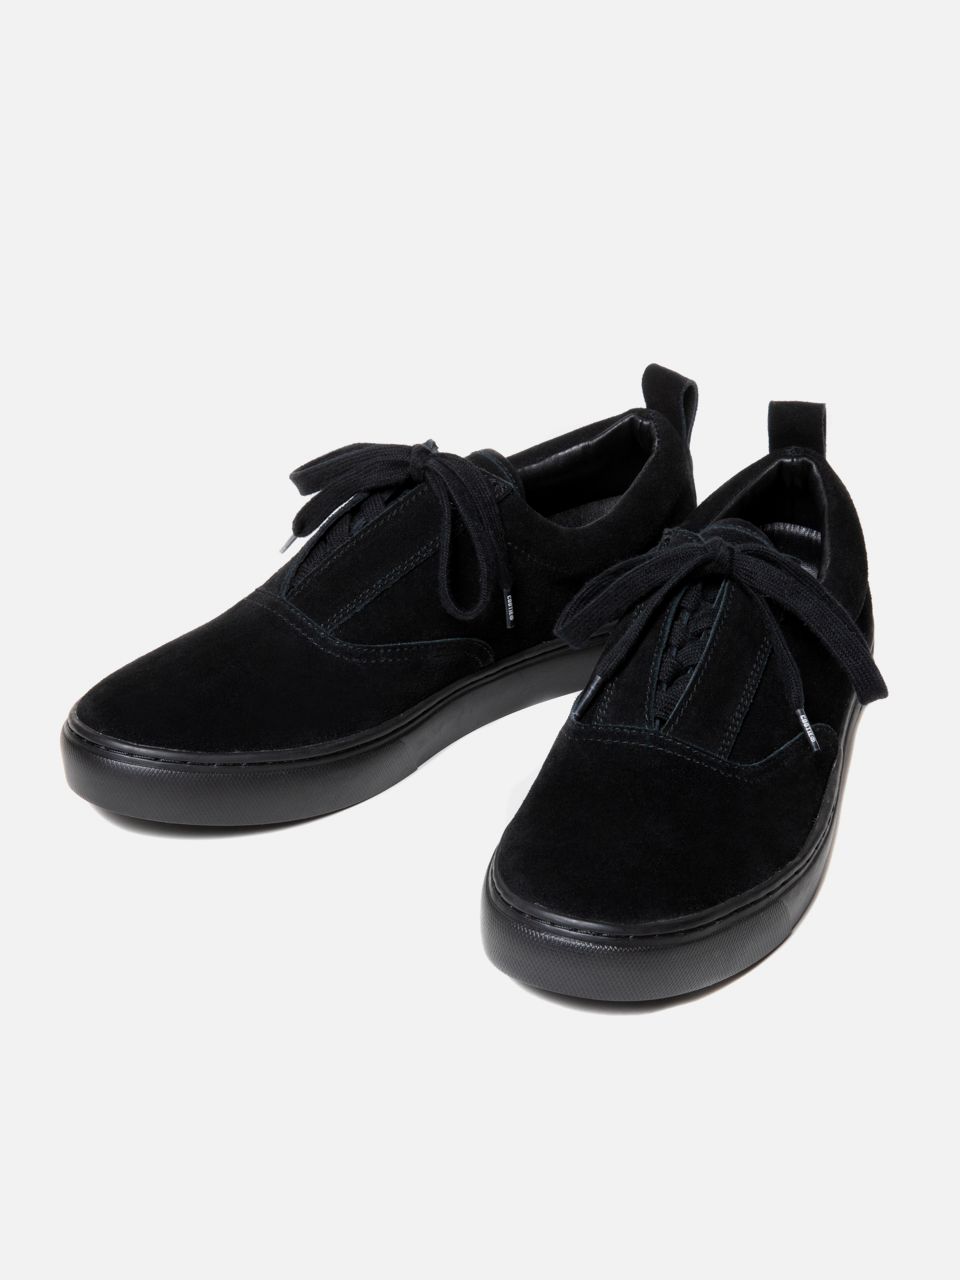 COOTIE / Raza Lace Up Shoes -Black×Black- | 80-HACHIMARU-